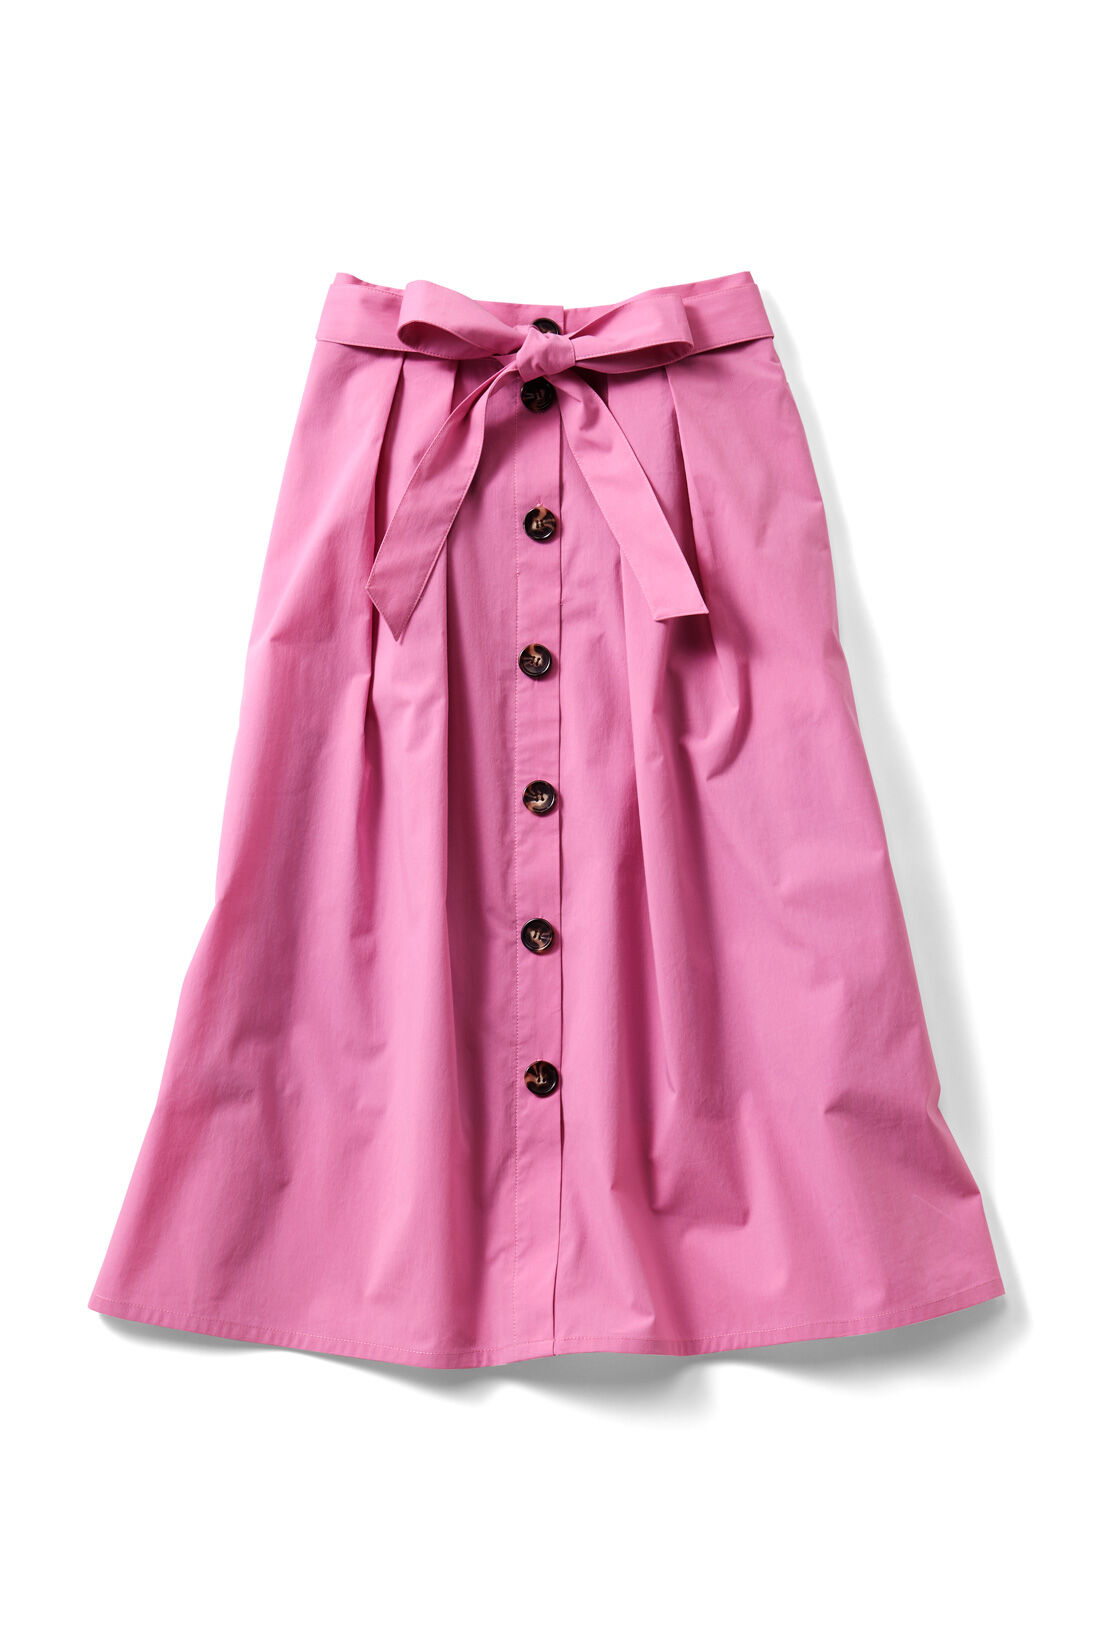 Real Stock|IEDIT フロントボタンフレアースカート〈ピンク〉|トレンドカラーの〈ピンク〉　ウエストコンシャスなリボンベルトでコーデにメリハリ。トレンチコートのようなフロントデザイン。上から４つめ以降は飾りボタンです。